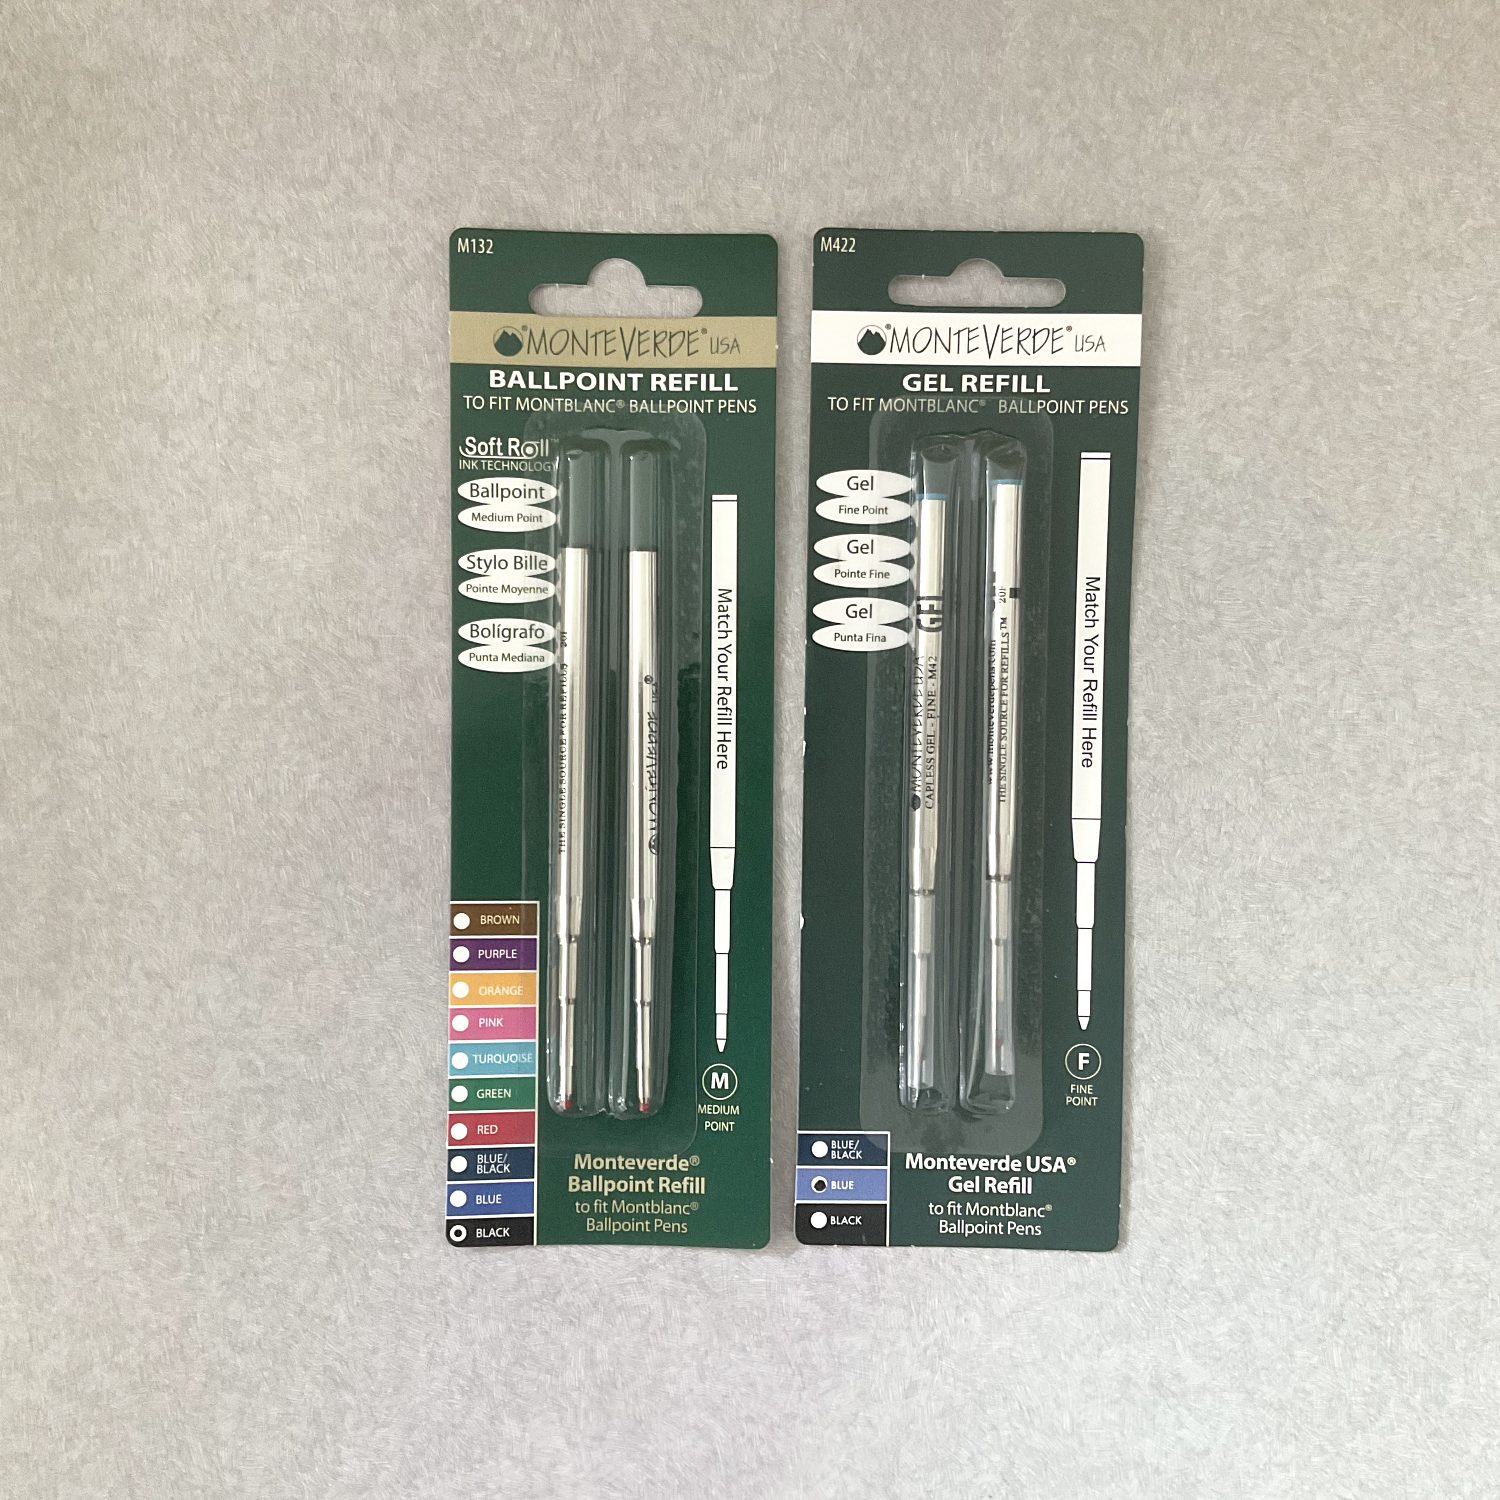 Monteverde Ballpoint Pen Refills to fit Montblanc Ballpoint Pen